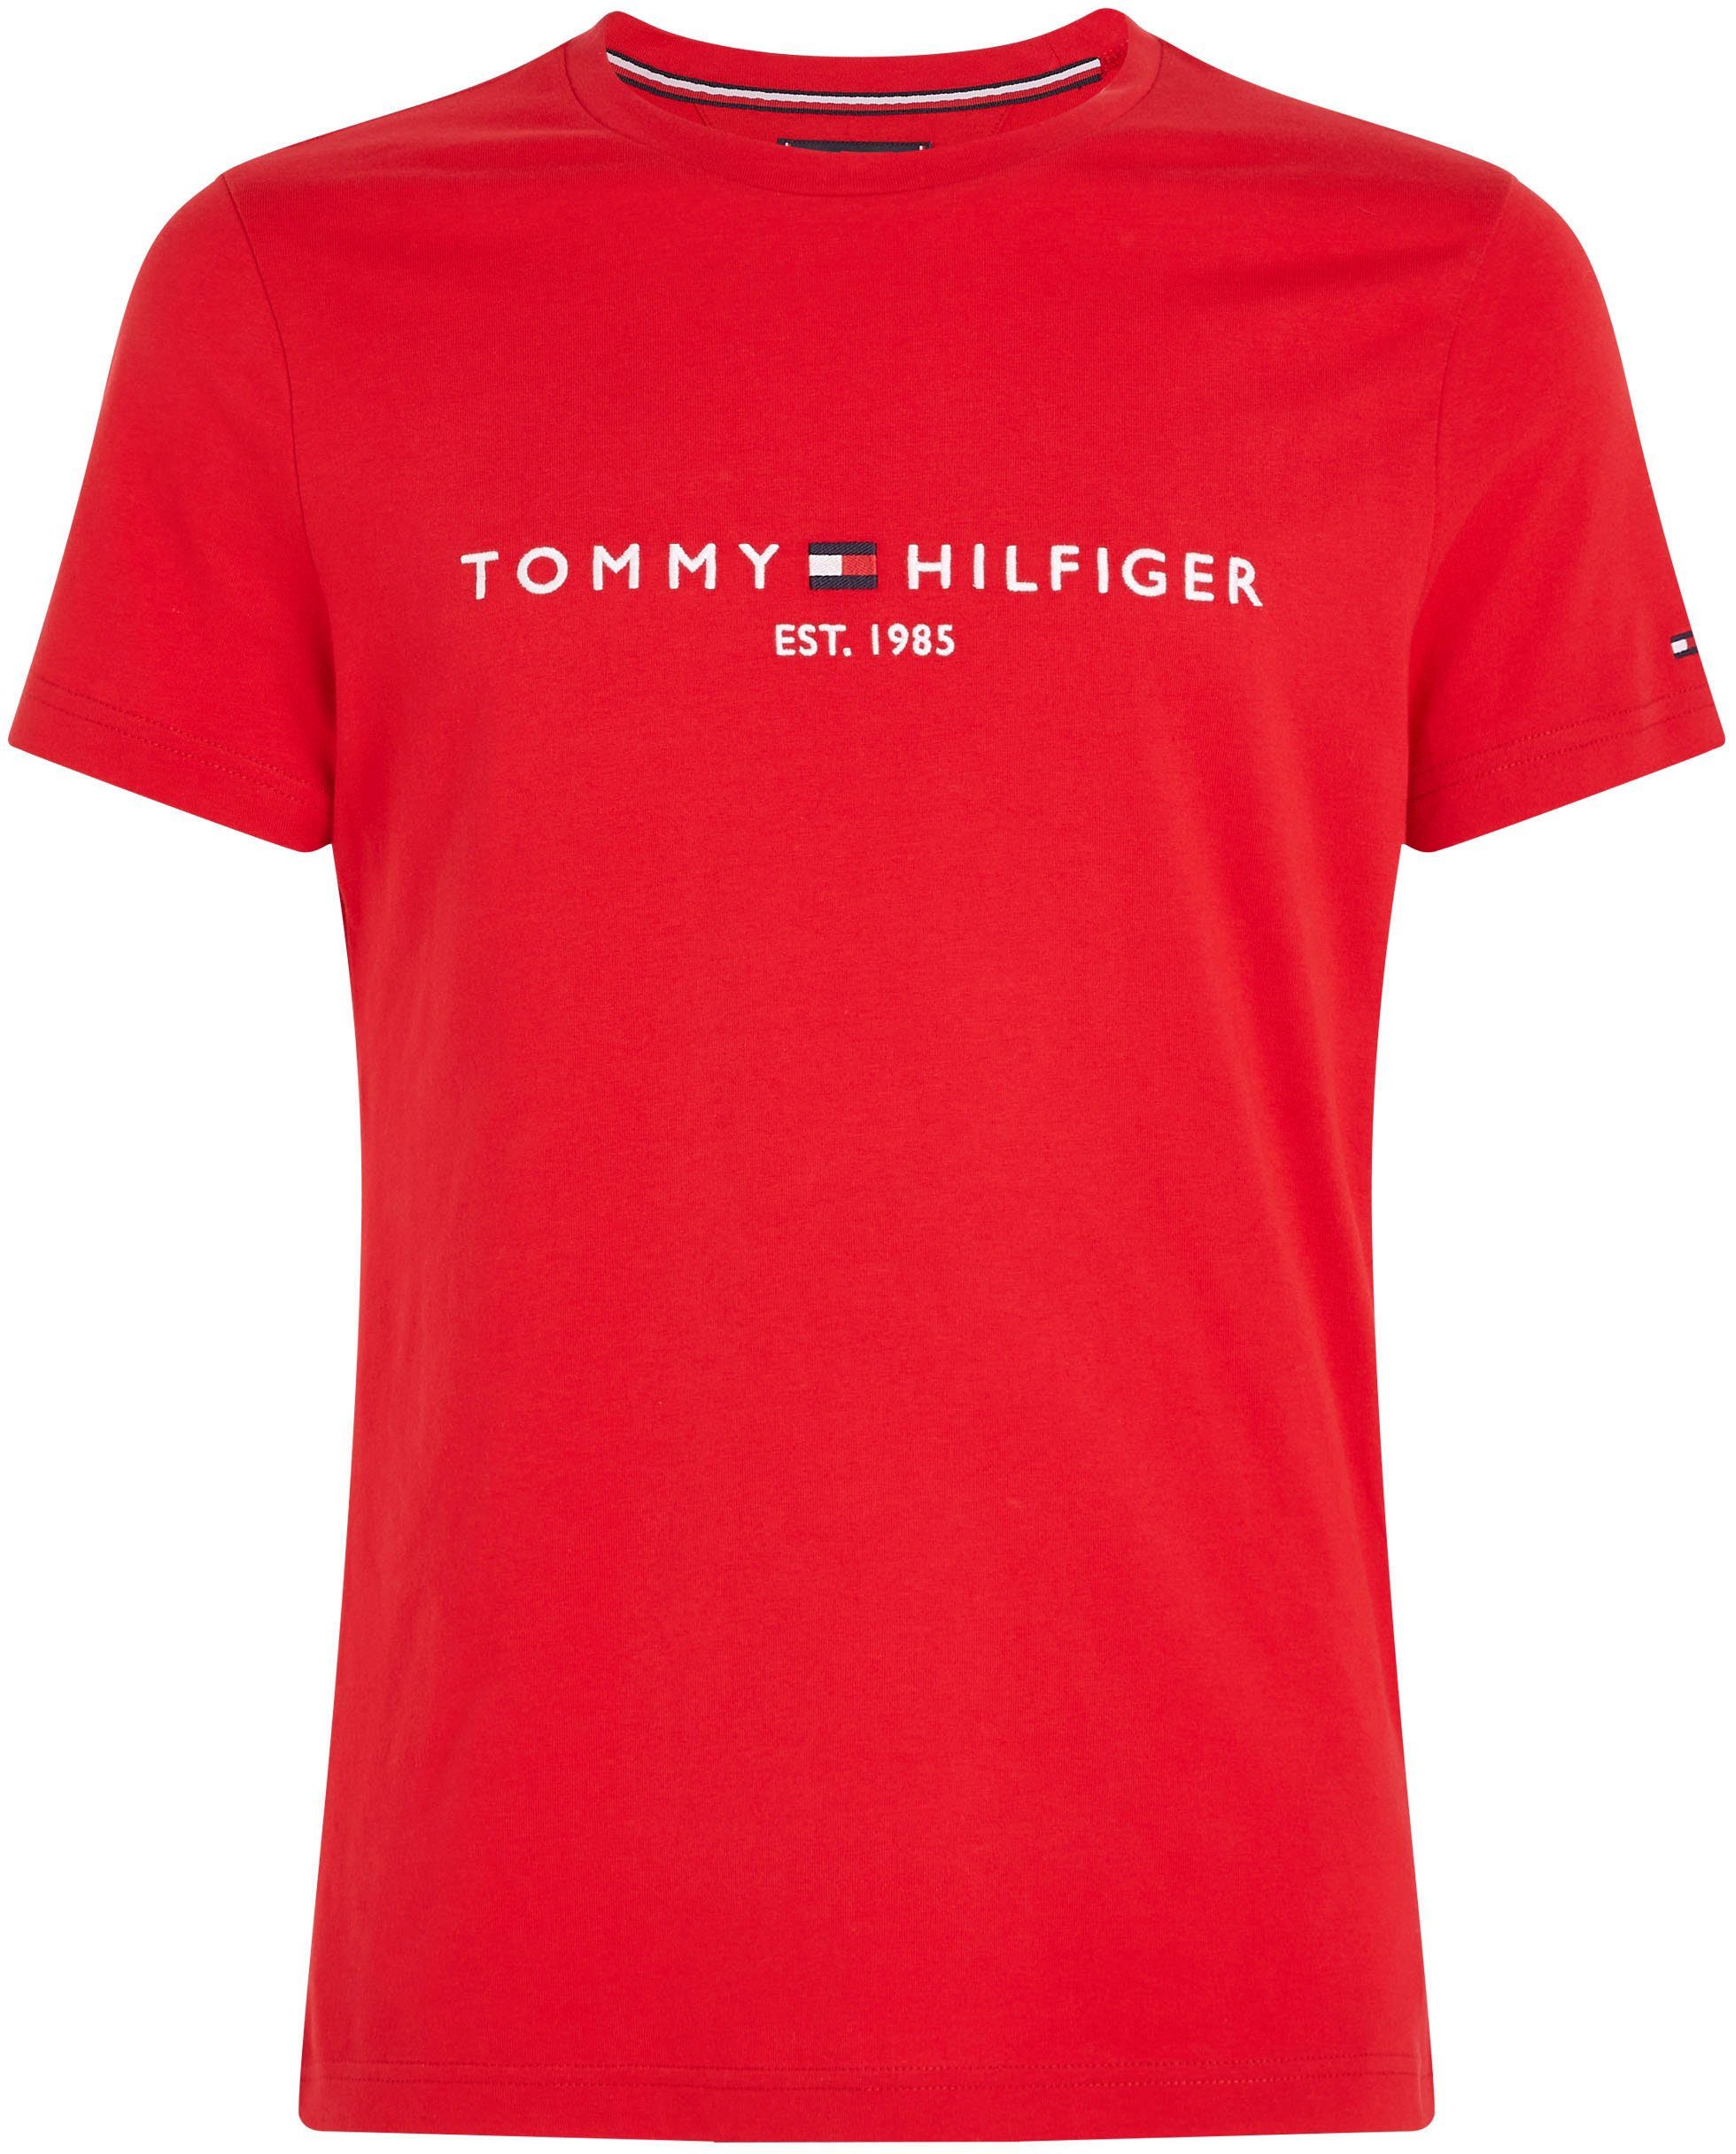 Tommy Hilfiger TOMMY Baumwolle reiner, T-Shirt LOGO rot TEE aus nachhaltiger